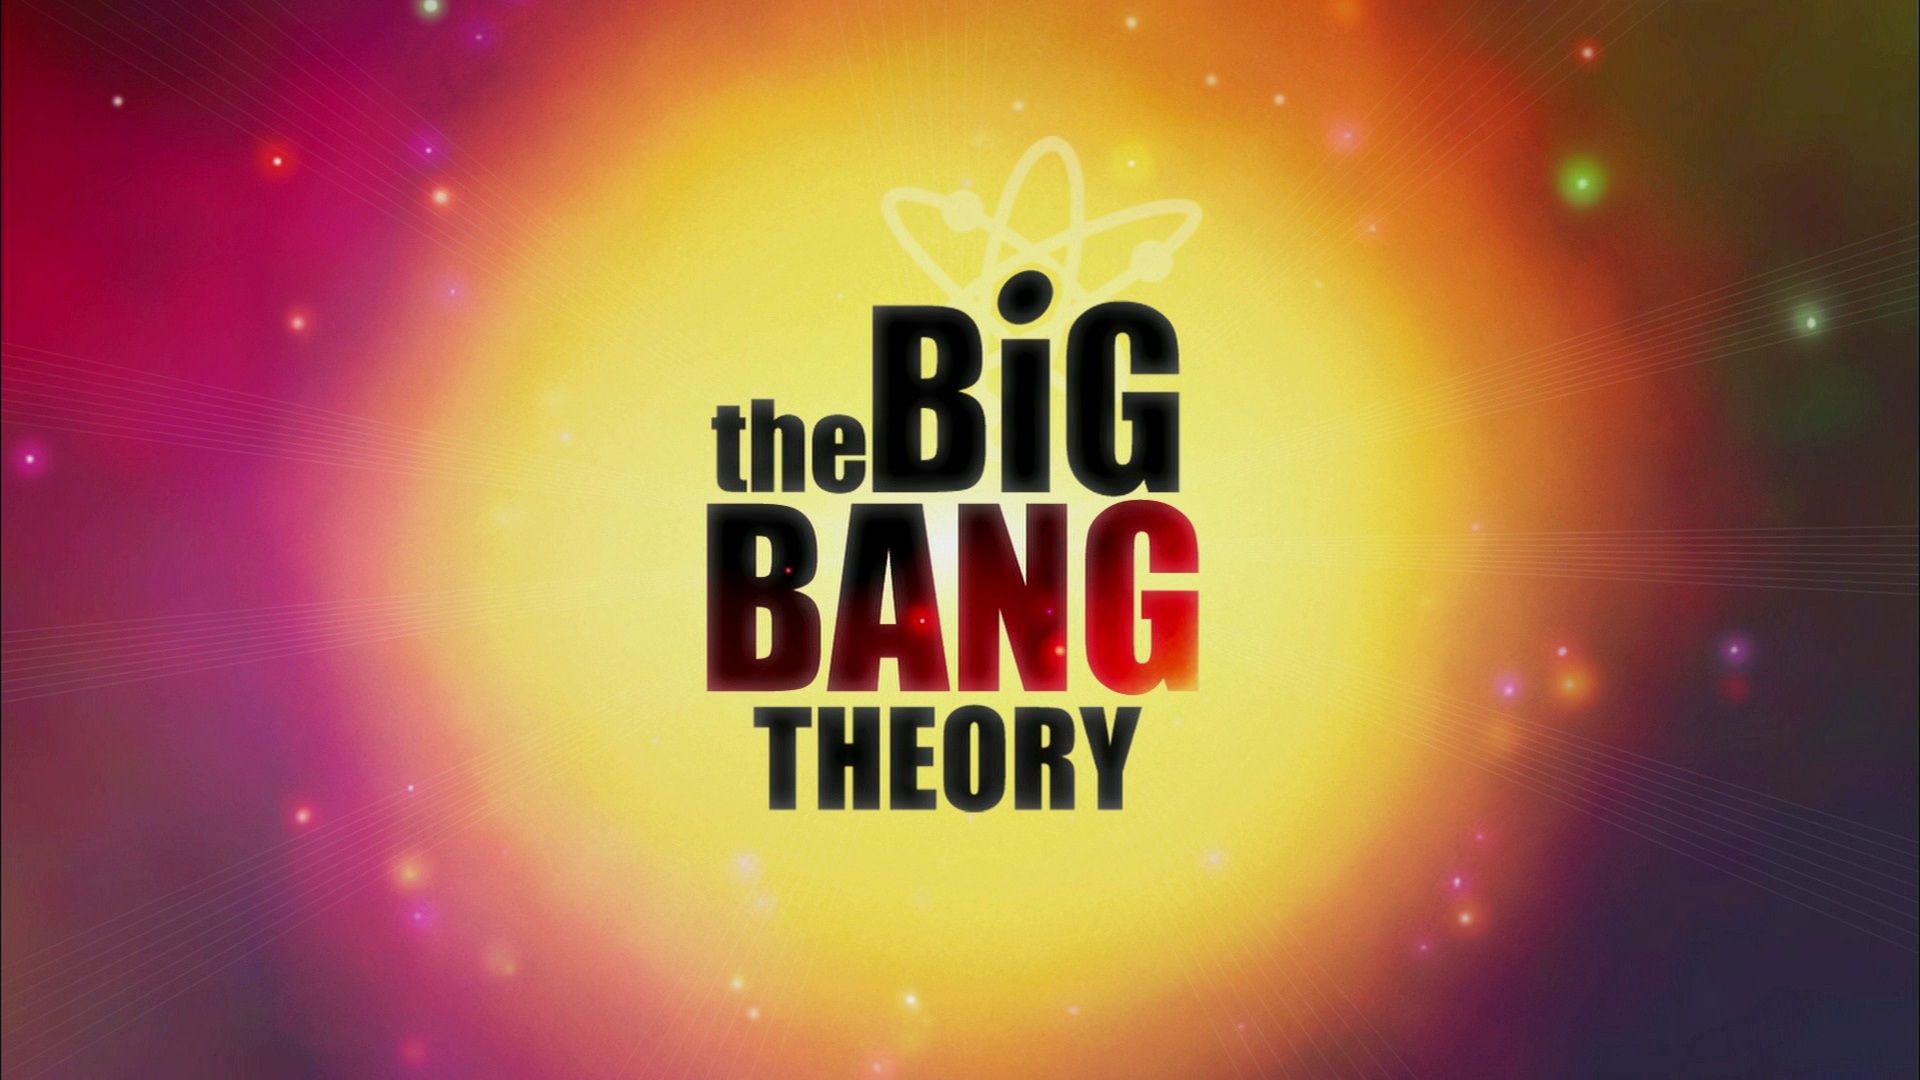 The Big Bang Theory. Warner Bros. Entertainment